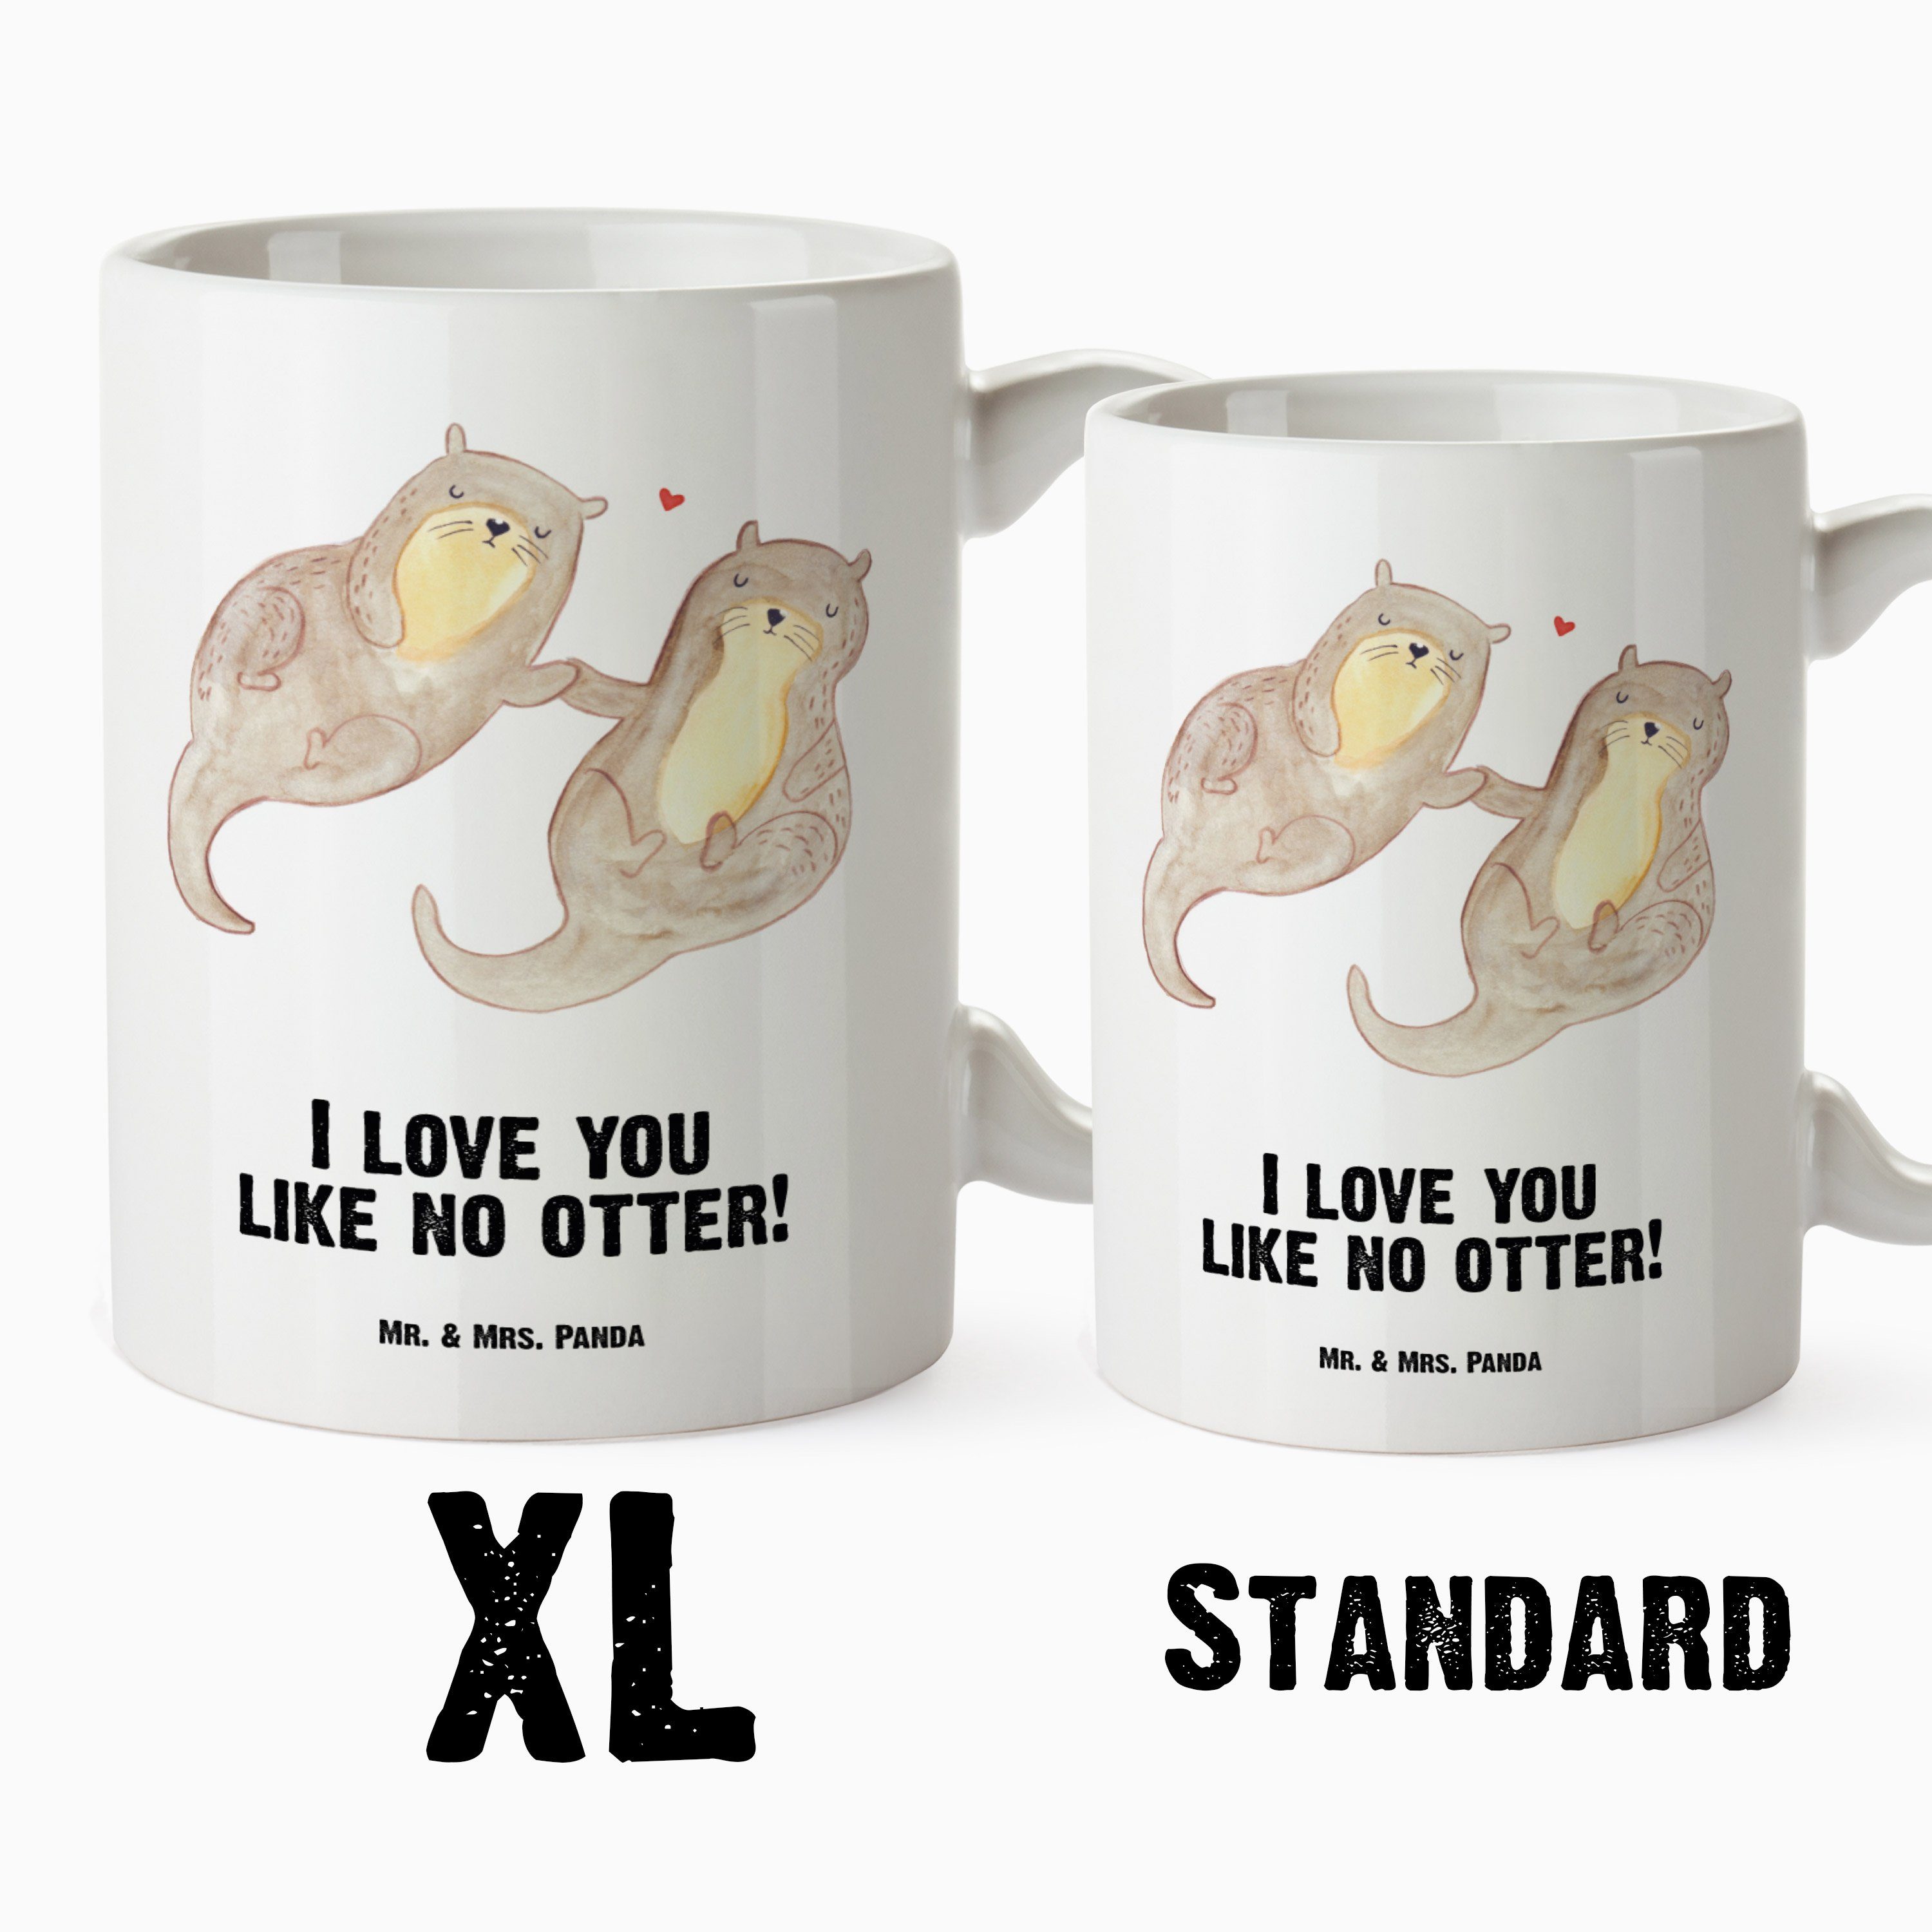 Mr. & Mrs. Panda - Tasse Otter Seeotter, Tasse, spülm, Jumbo XL - händchenhaltend Geschenk, Tasse Keramik Weiß